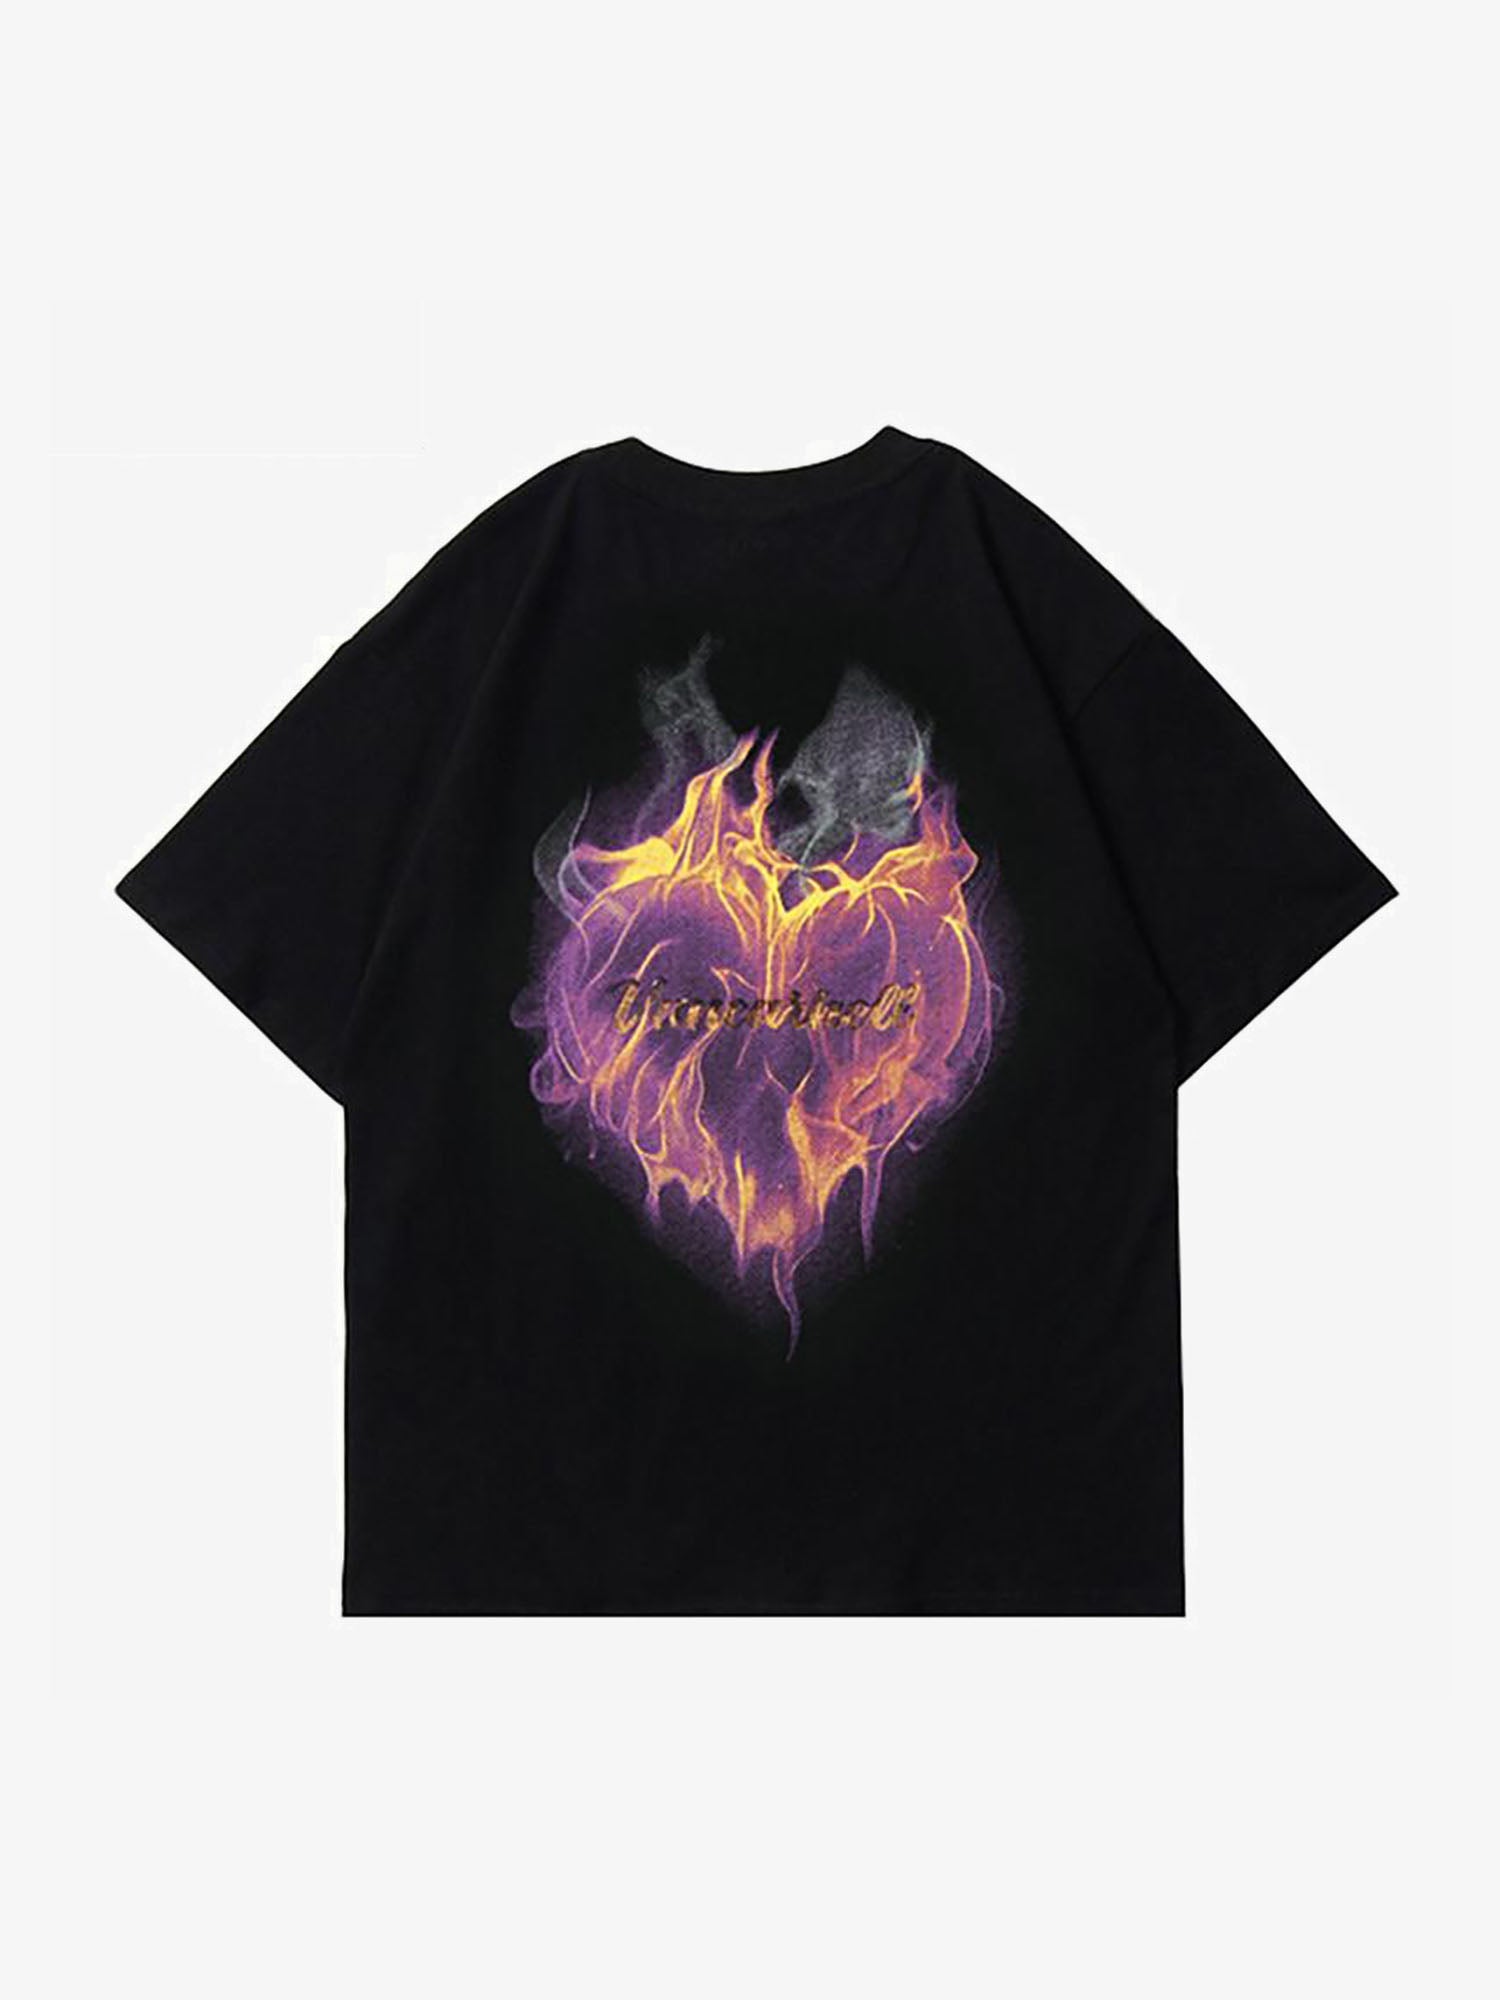 Justnotag T-shirt a maniche corte con stampa fiammeggiante a forma di cuore